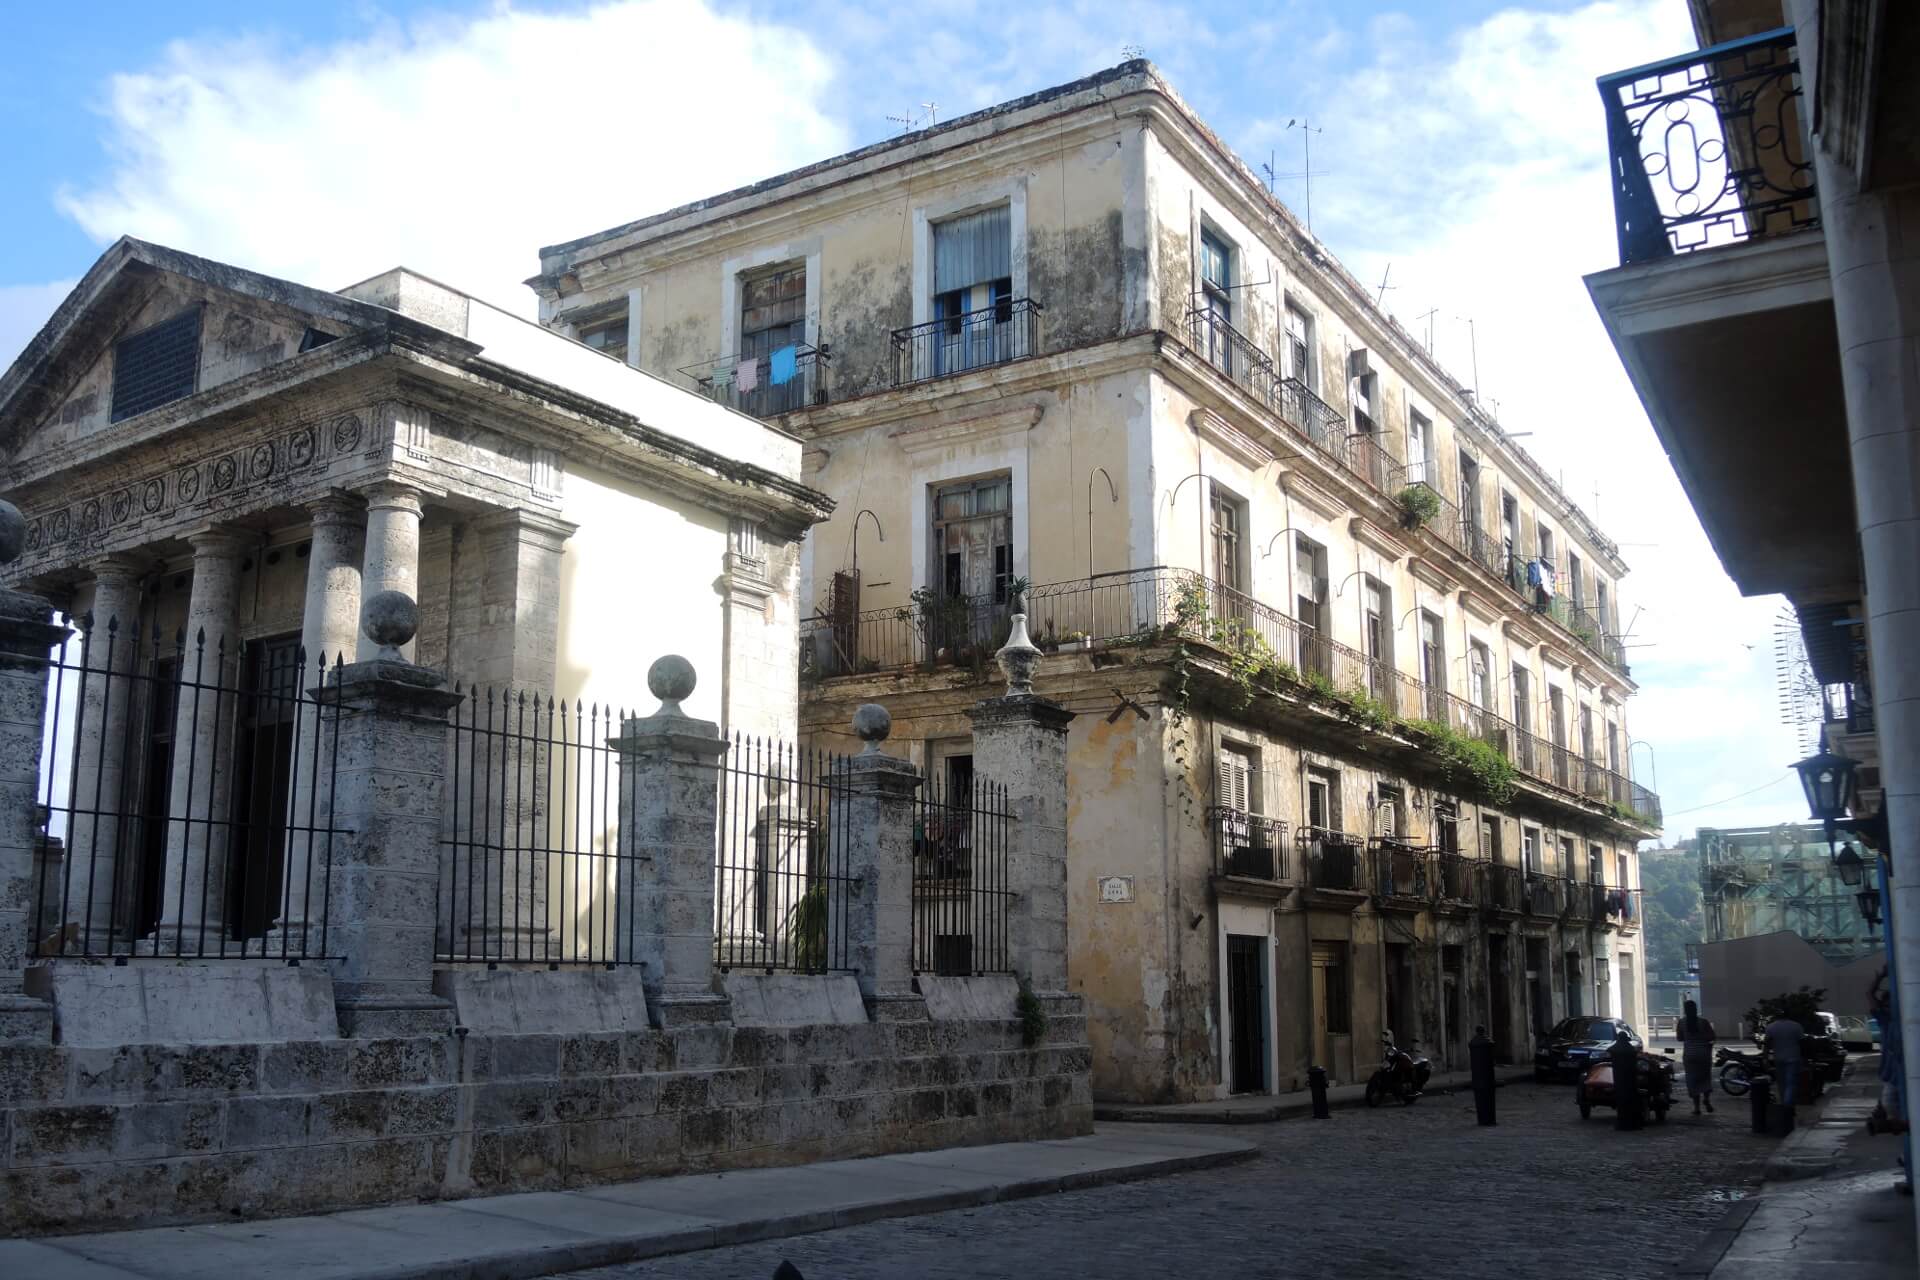 Die schönsten Sehenswürdigkeiten in Kuba - La Habana Vieja, die Altstadt Havannas